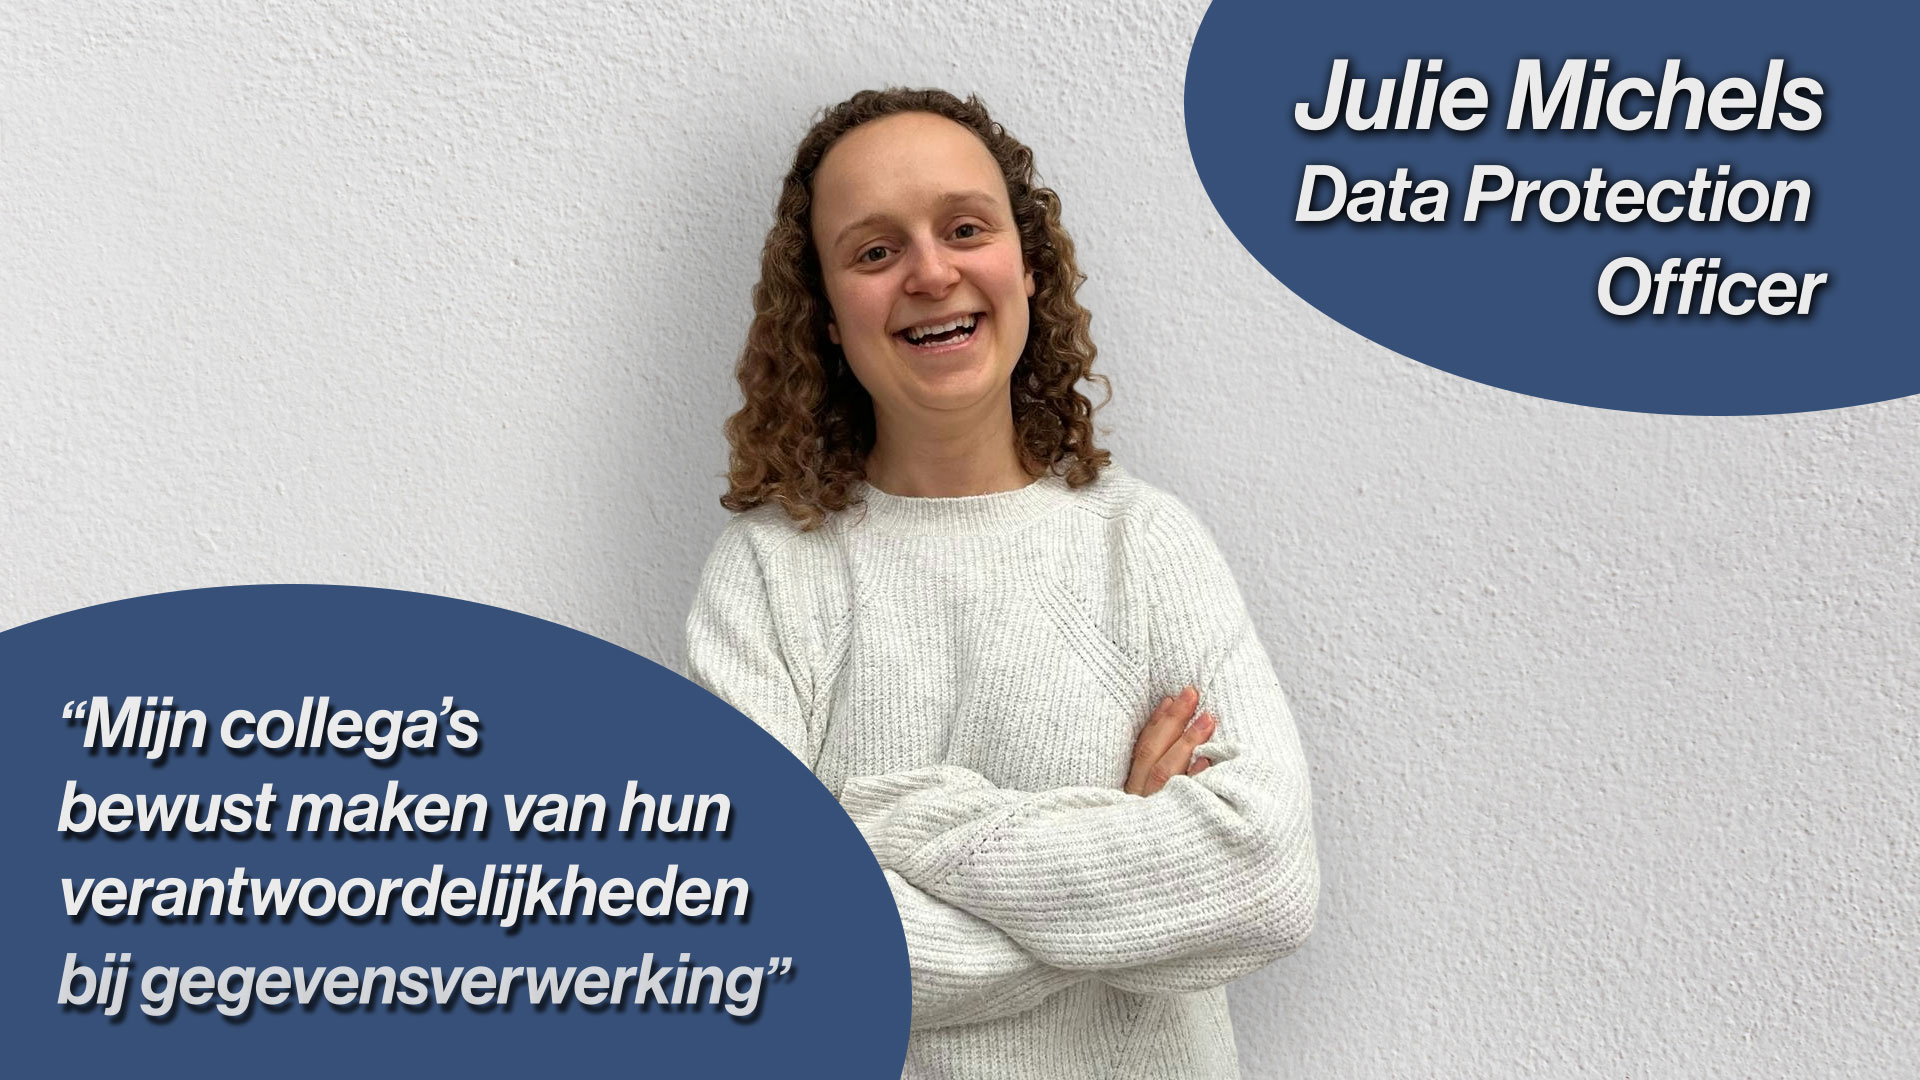 Julie Michels Data Protection Officer quote Mijn collega's bewust maken van hun verantwoordelijkheden bij gegevensverwerking